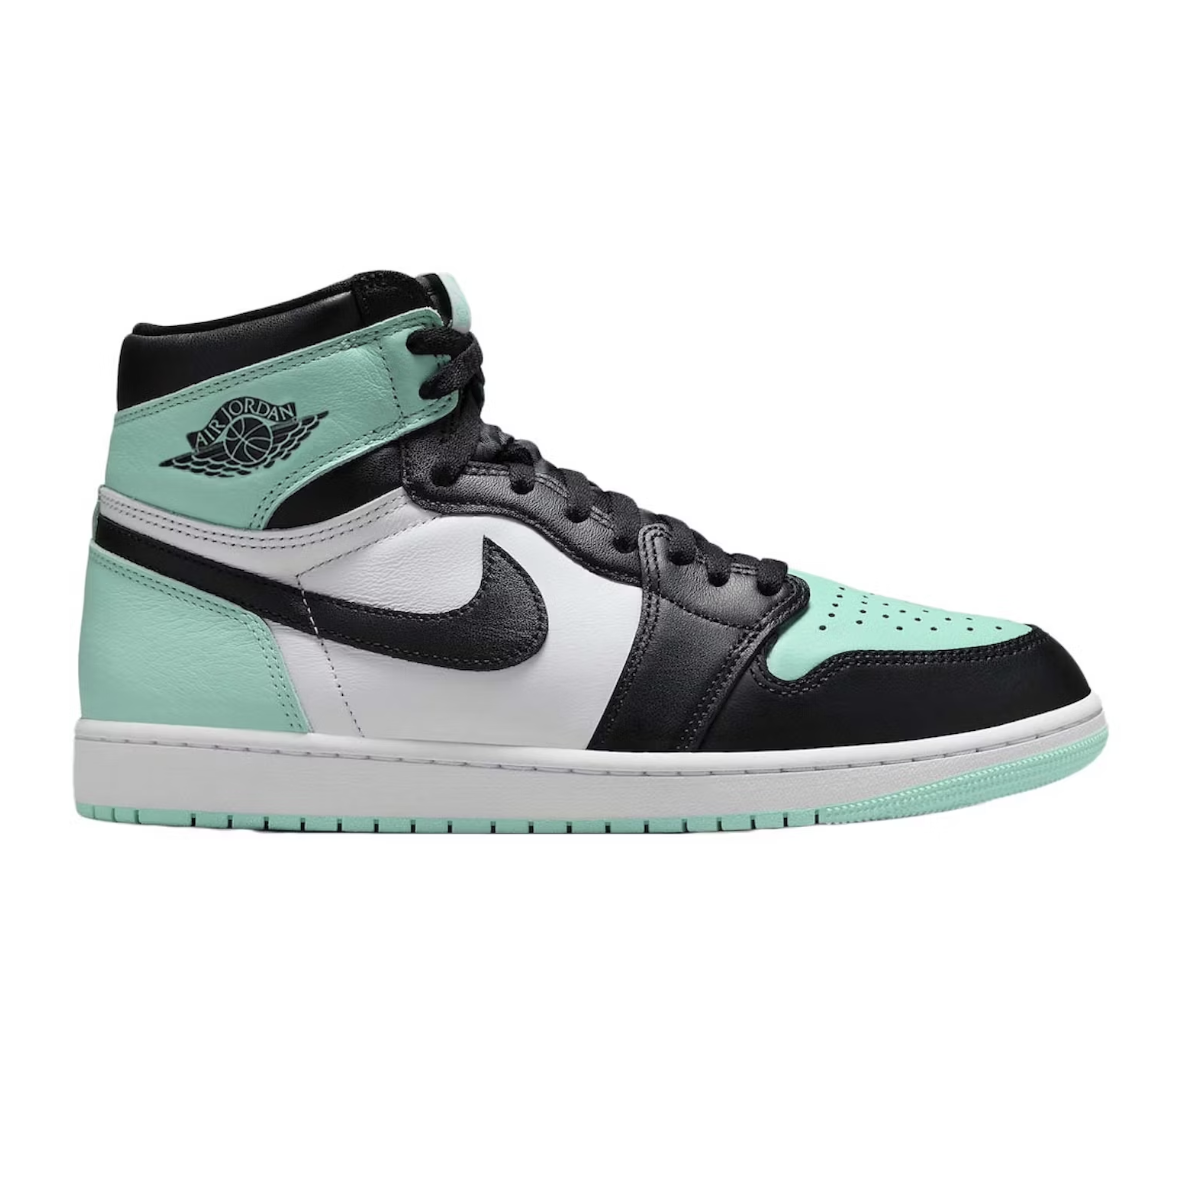 Jordan 1 Retro High OG Green Glow - SA Sneakers